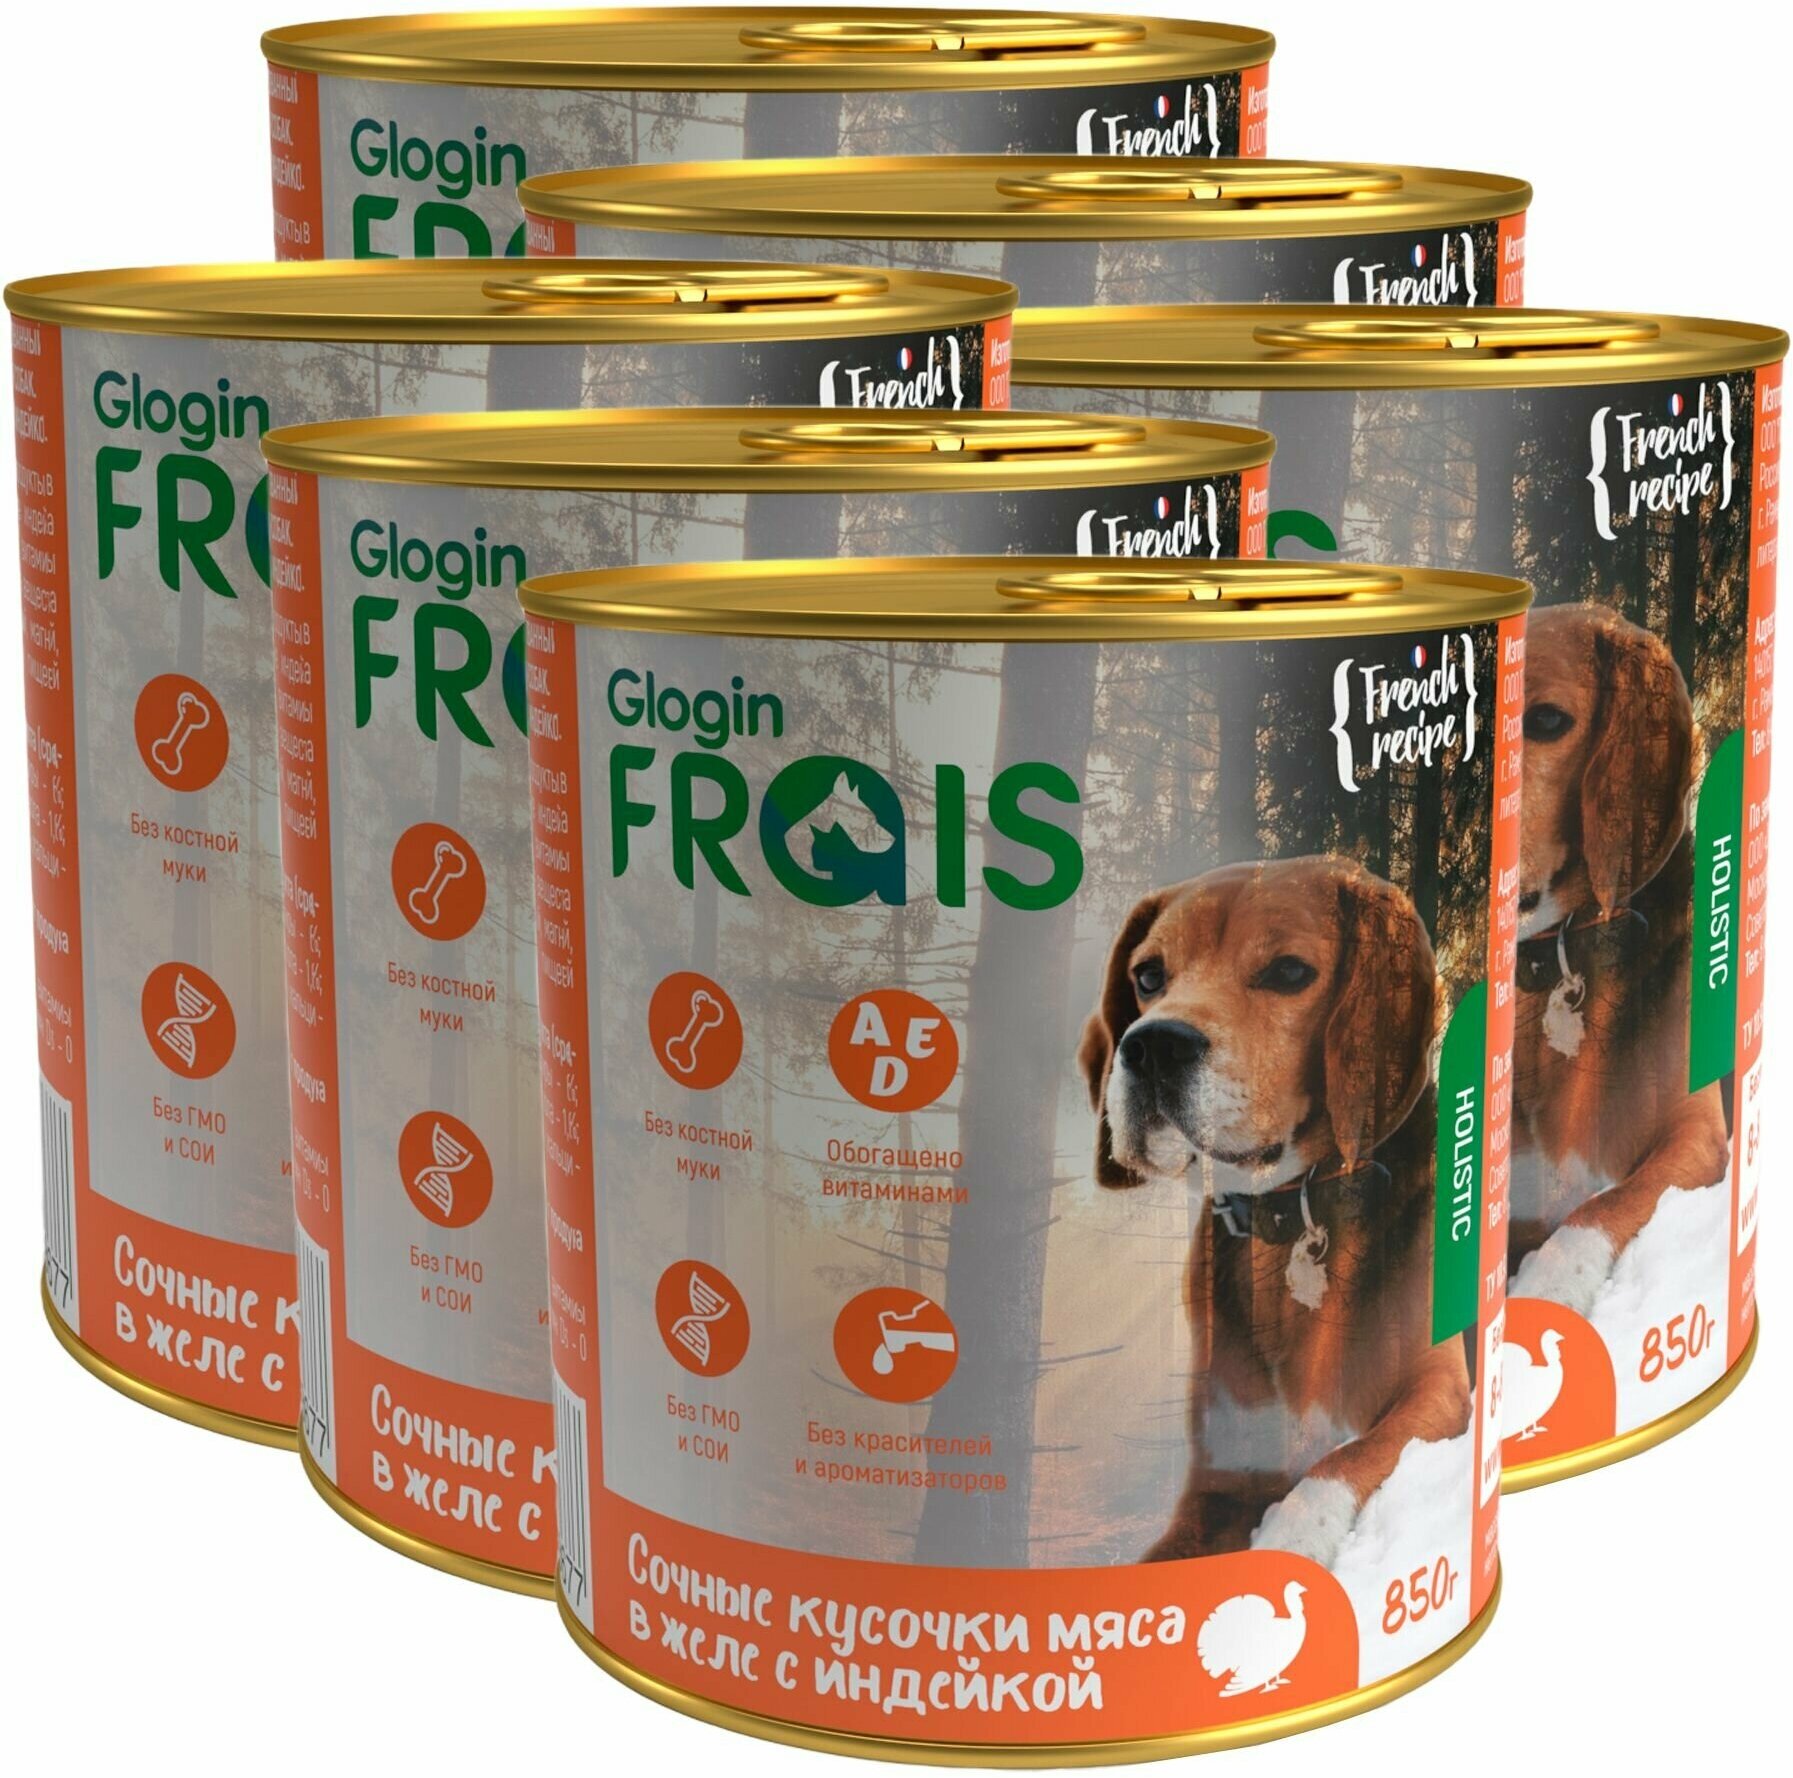 Влажный корм для собак Frais HD Сочные кусочки мяса в желе с индейкой 850г ООО Глобал Петфуд - фото №13